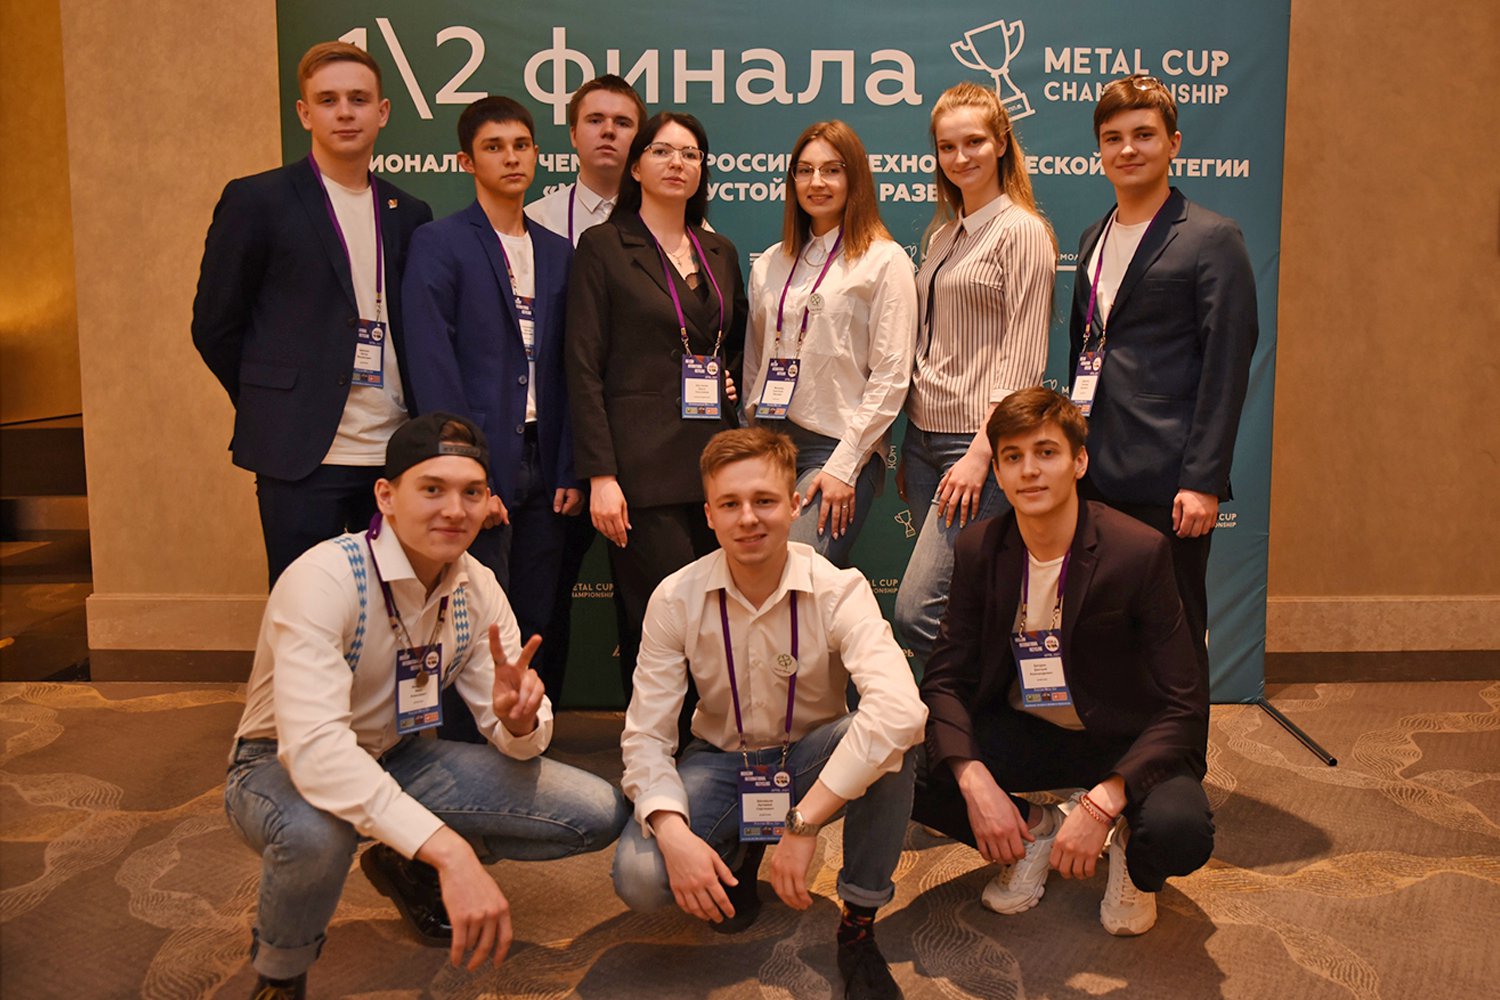 Студенты МИСиС выступили в полуфинале чемпионата Metal Cup